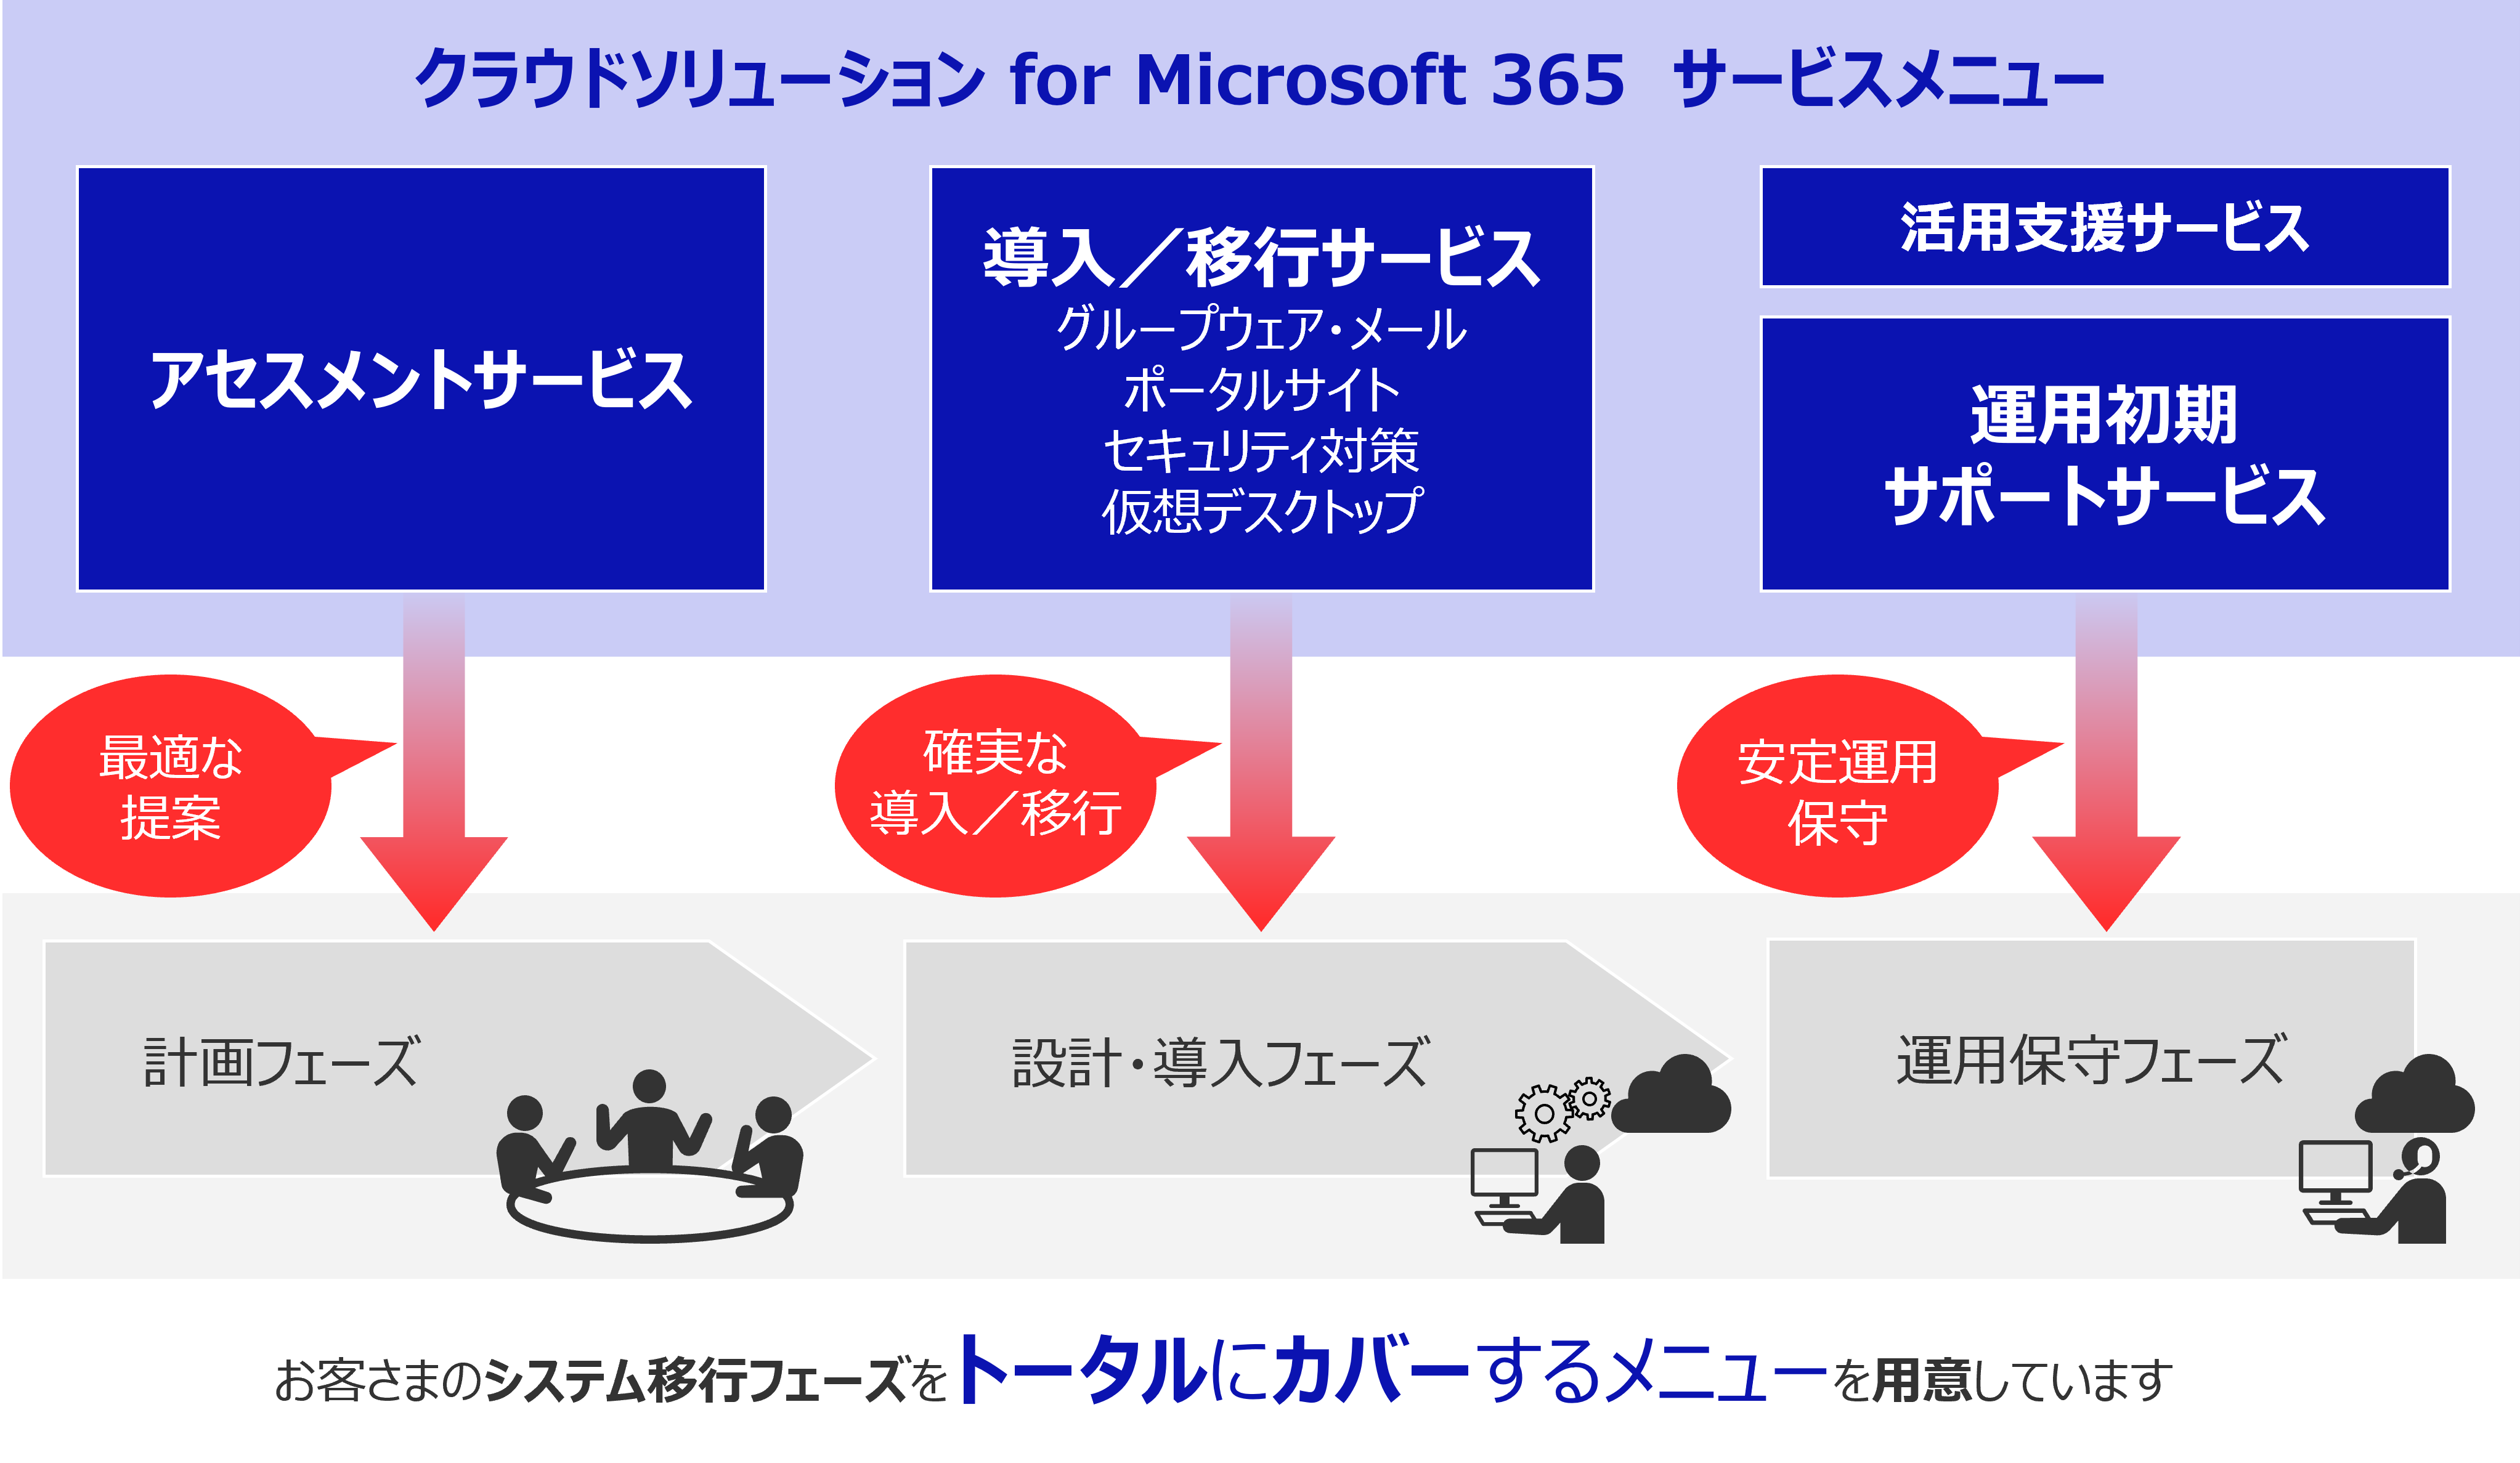 『クラウドソリューション for Microsoft 365』のサービスメニュー一覧